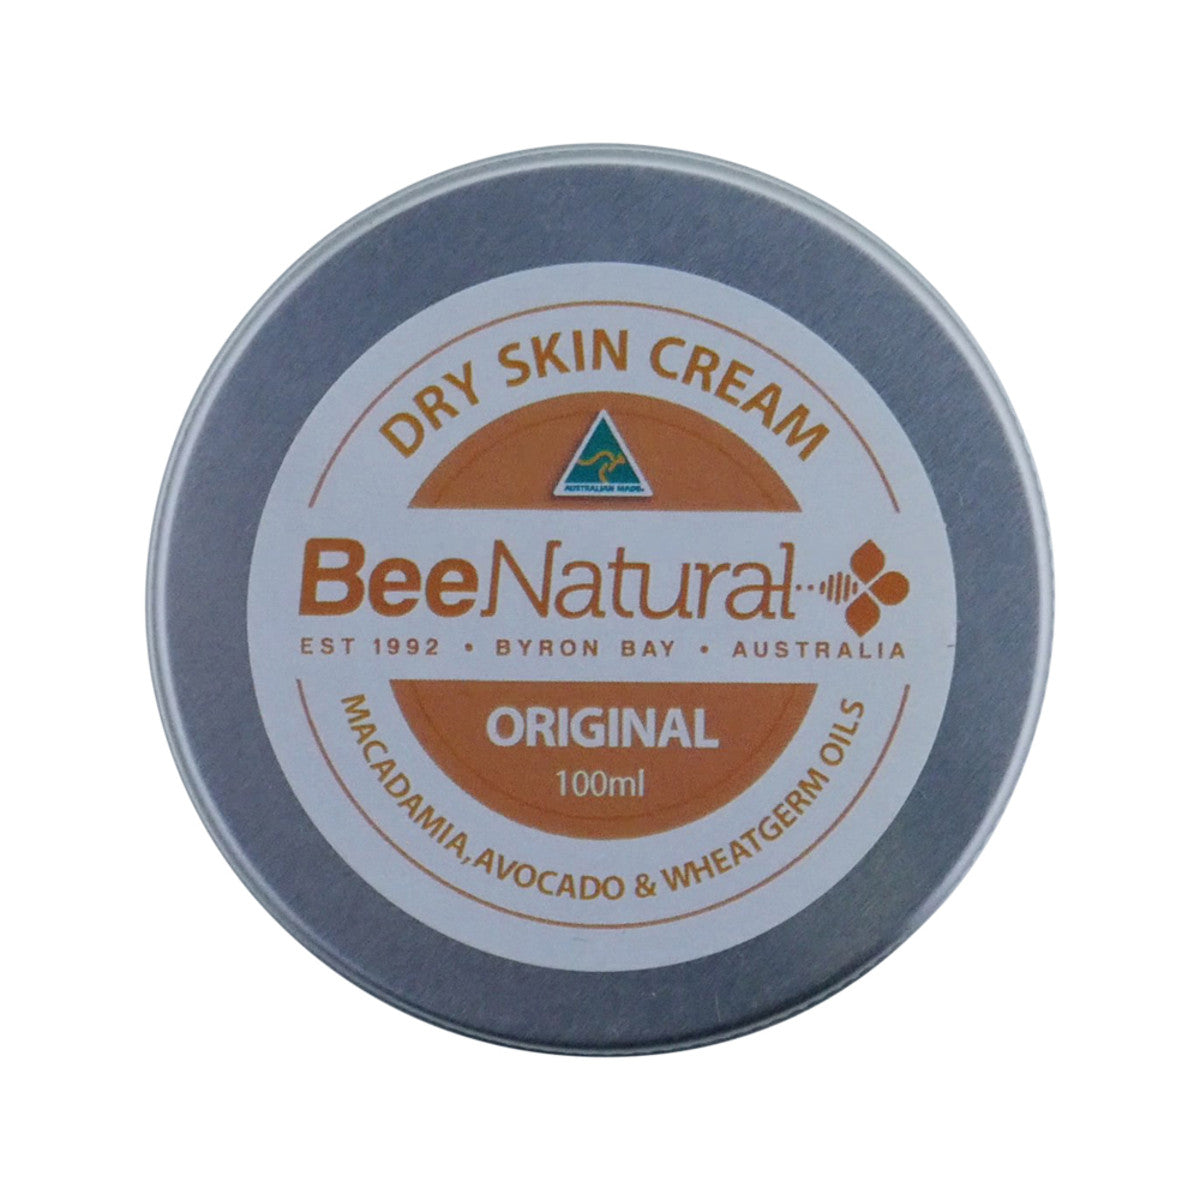 Bee Natural - Dry Skin Cream Original